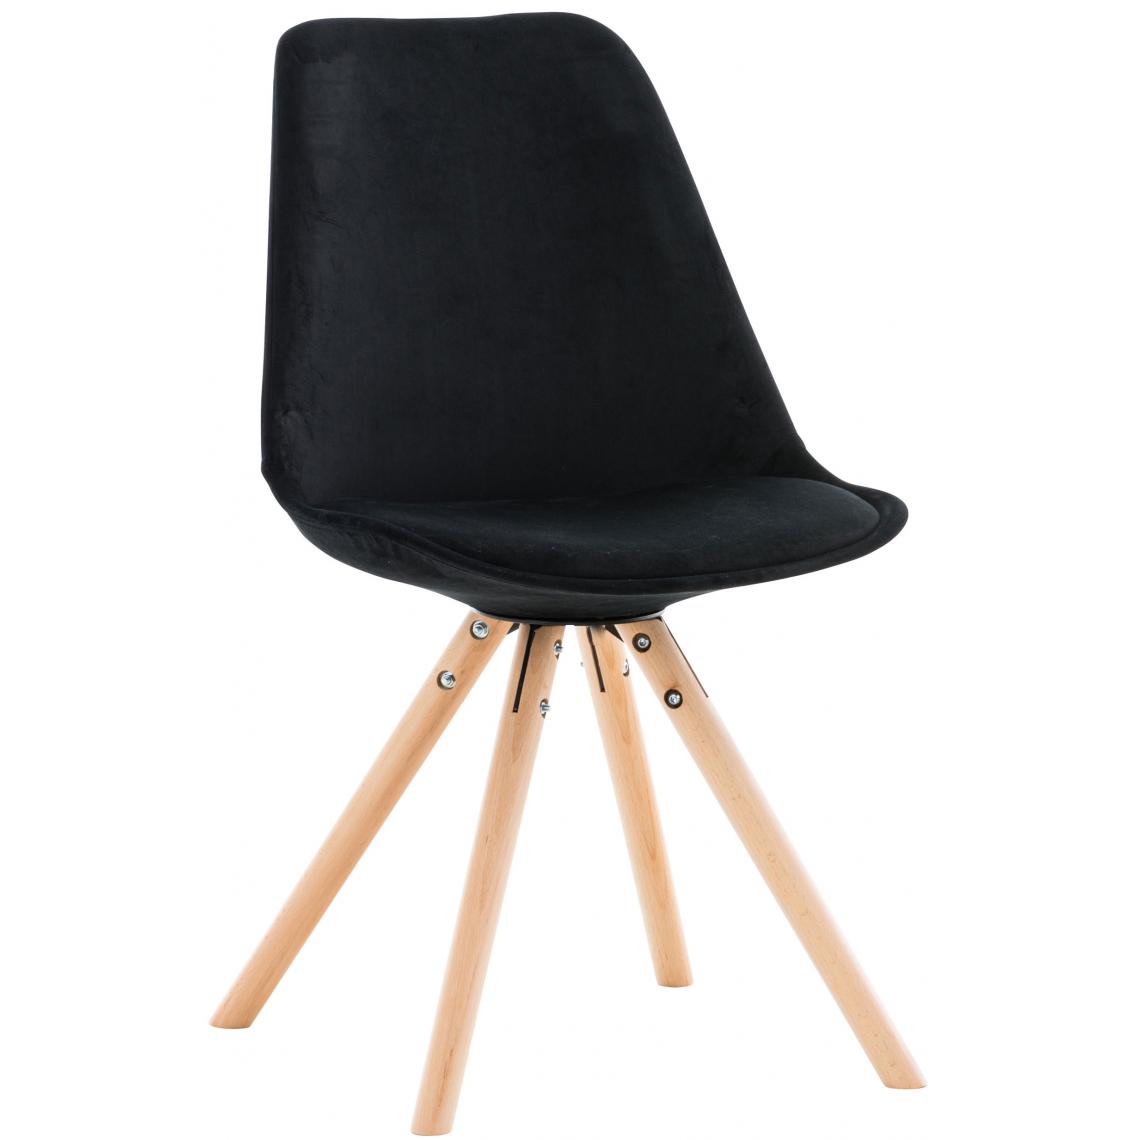 Icaverne - Splendide Chaise ronde en velours famille Manille naturel couleur noir - Chaises